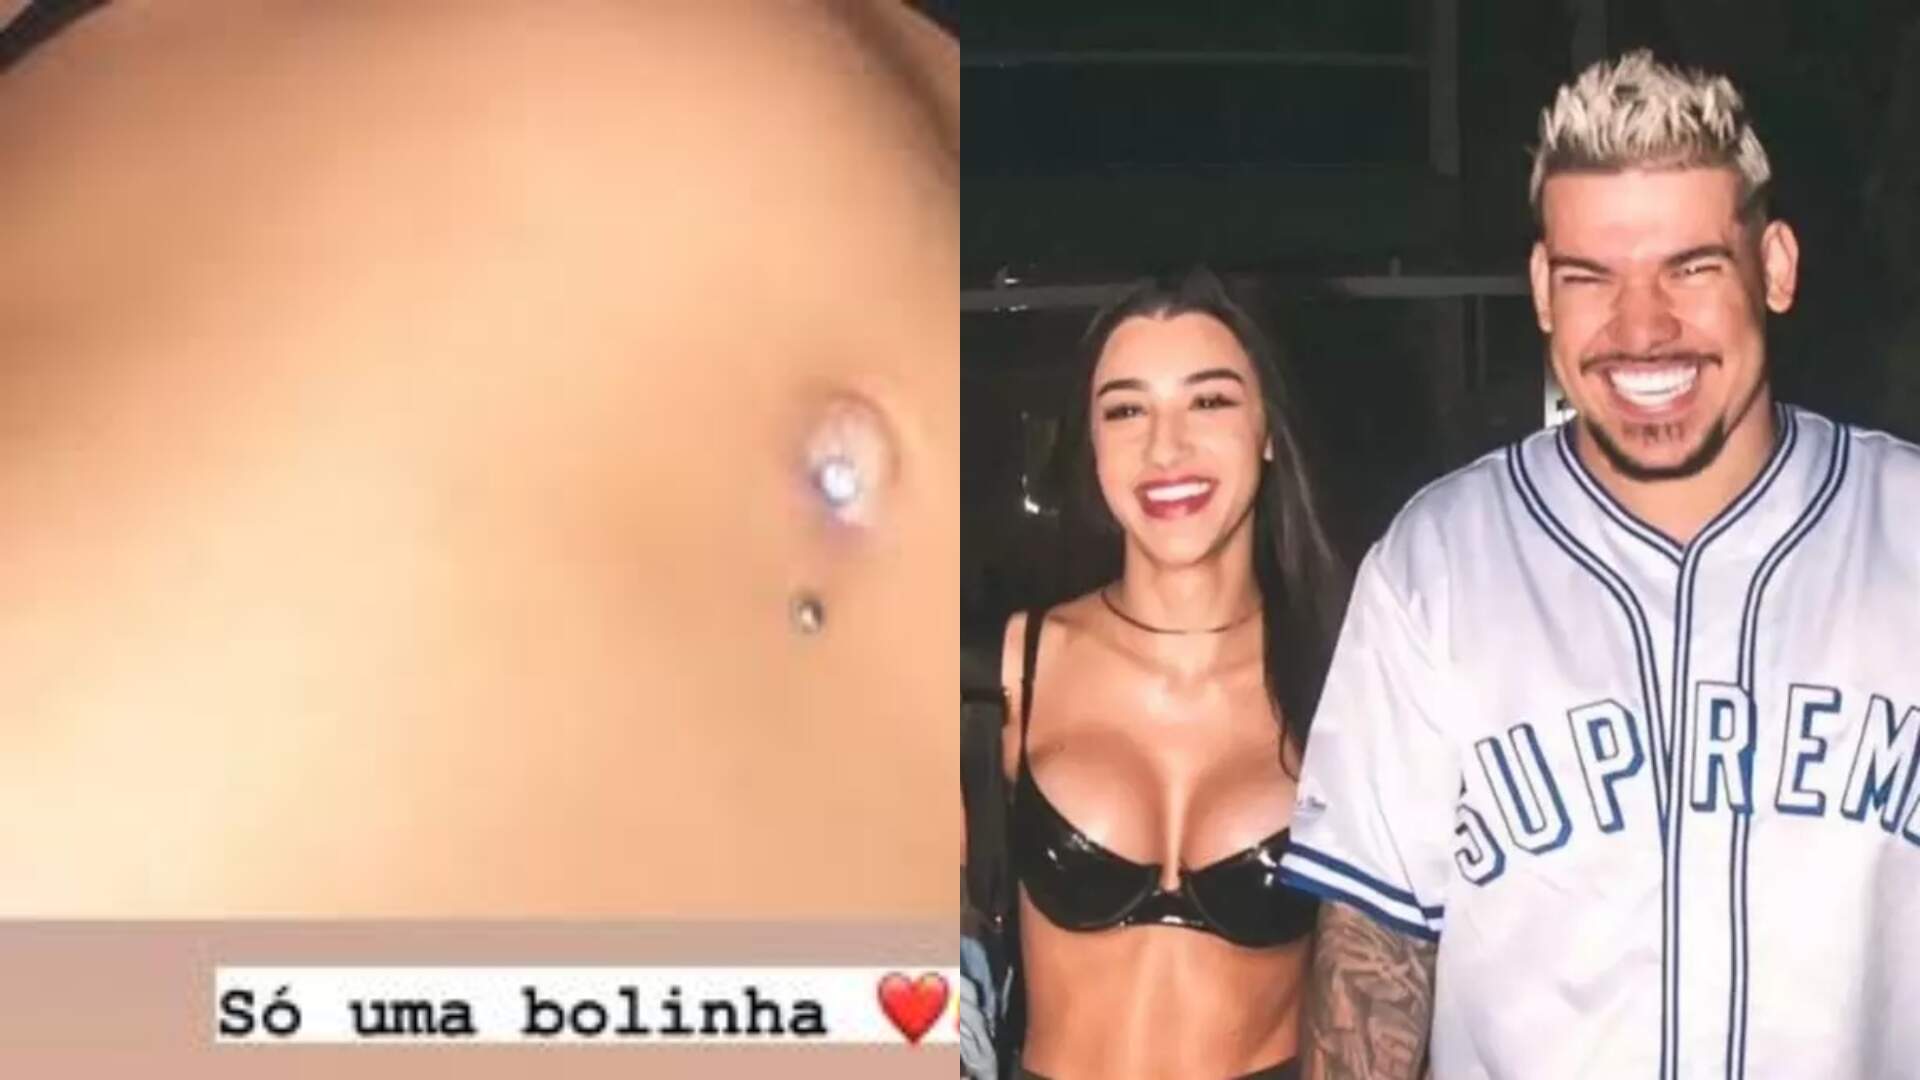 Após ter gravidez vazada pelo ex-namorado, Bia Miranda mostra primeira foto da barriga e dá detalhes: “Uma bolinha” - Metropolitana FM